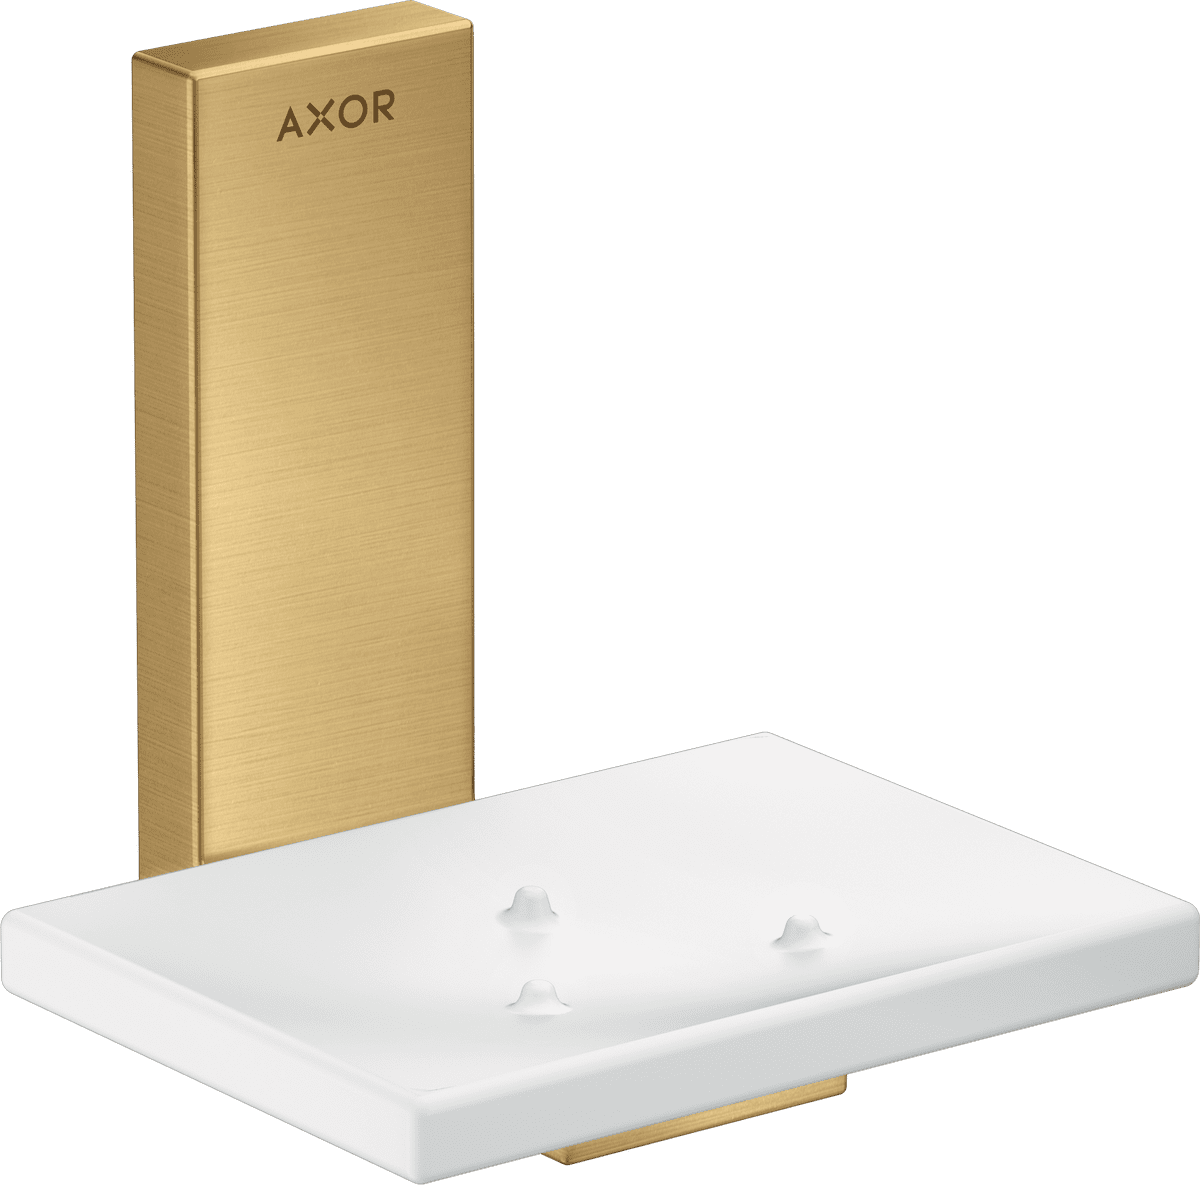 εικόνα του HANSGROHE AXOR Universal Rectangular Soap dish #42605250 - Brushed Gold Optic